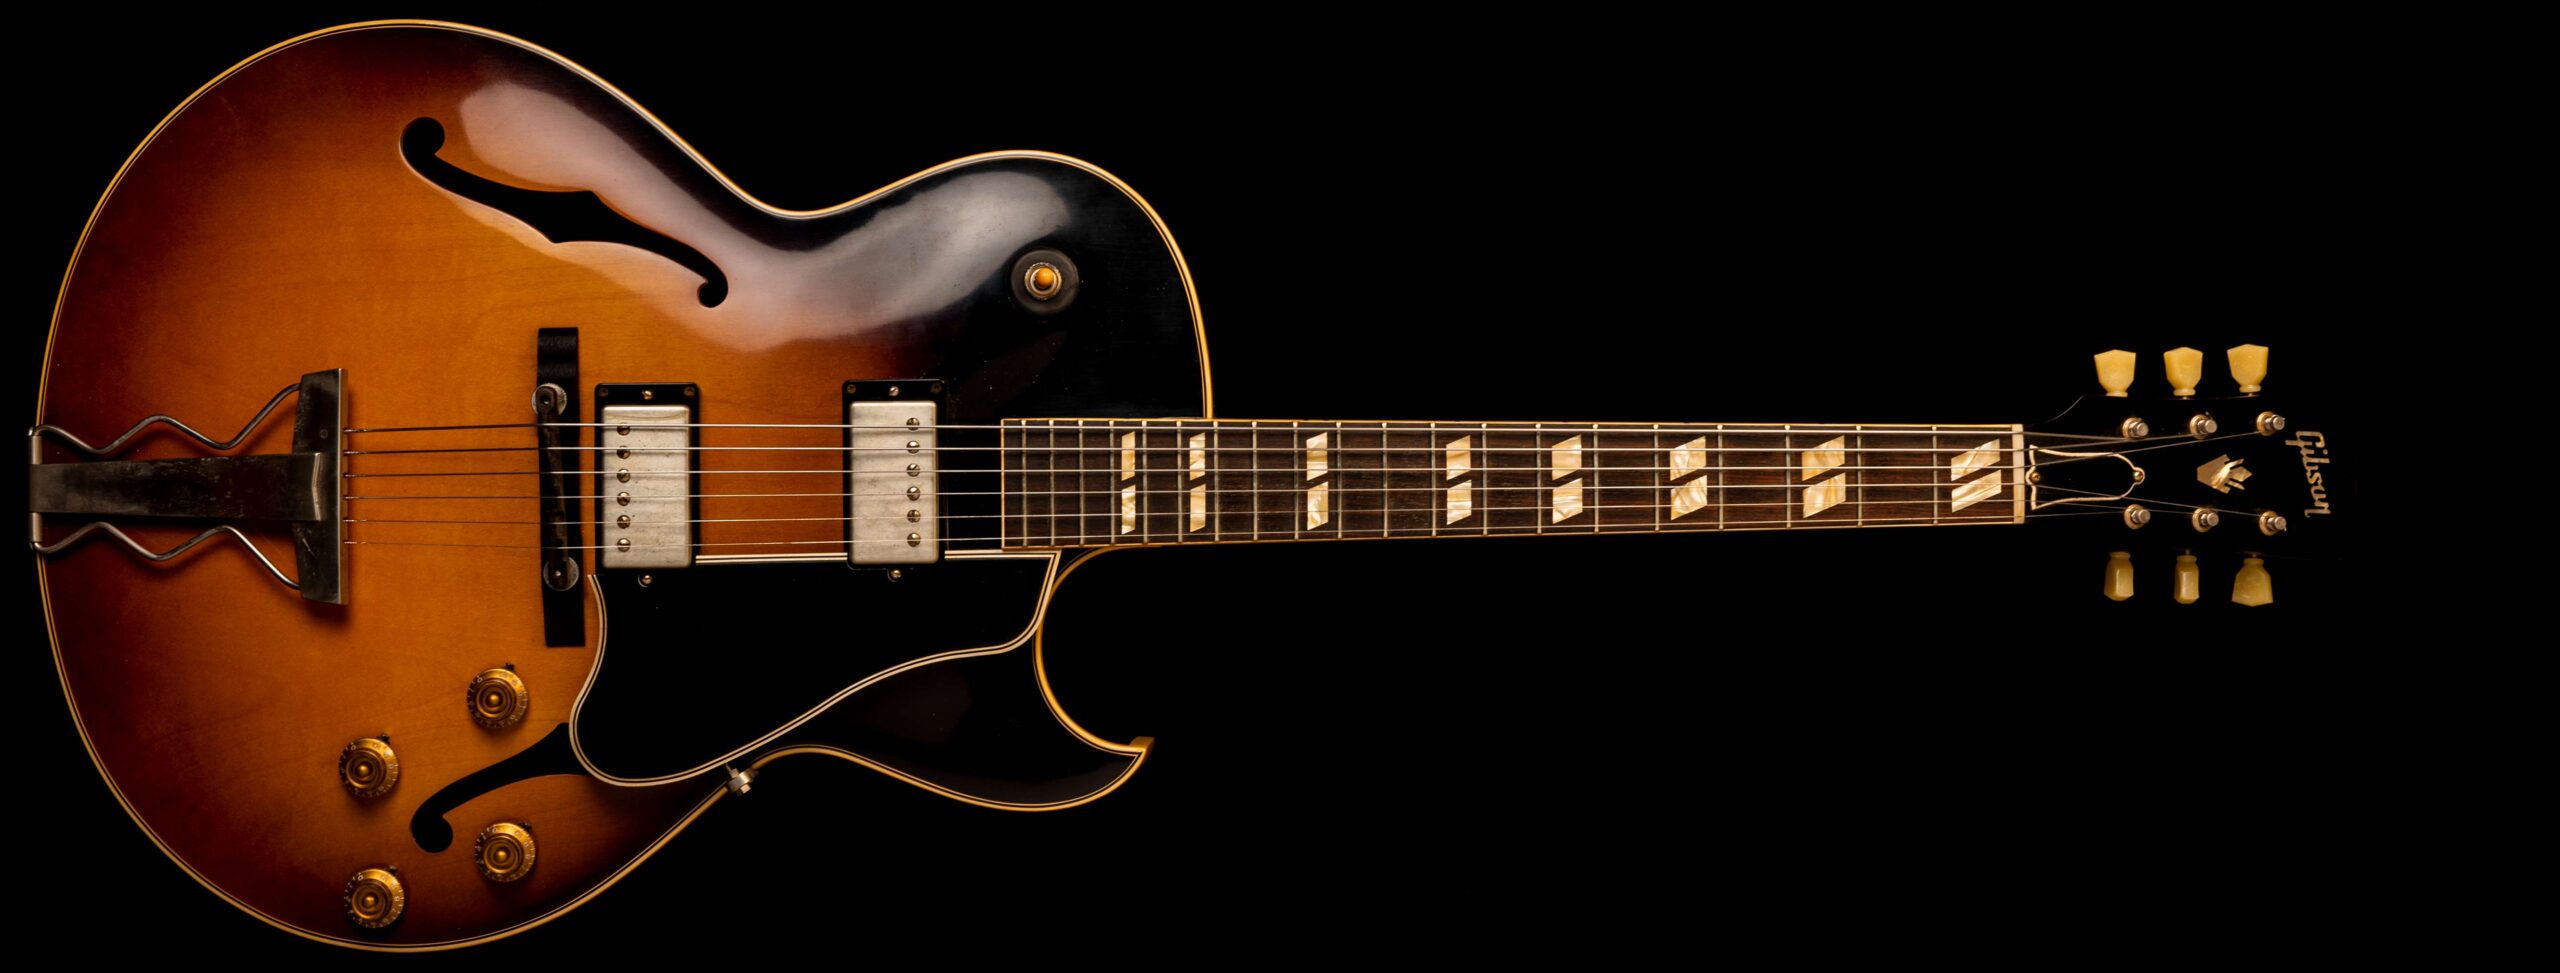 Gibson ES-175D 1959 VOS Vintage Sunburst 2012